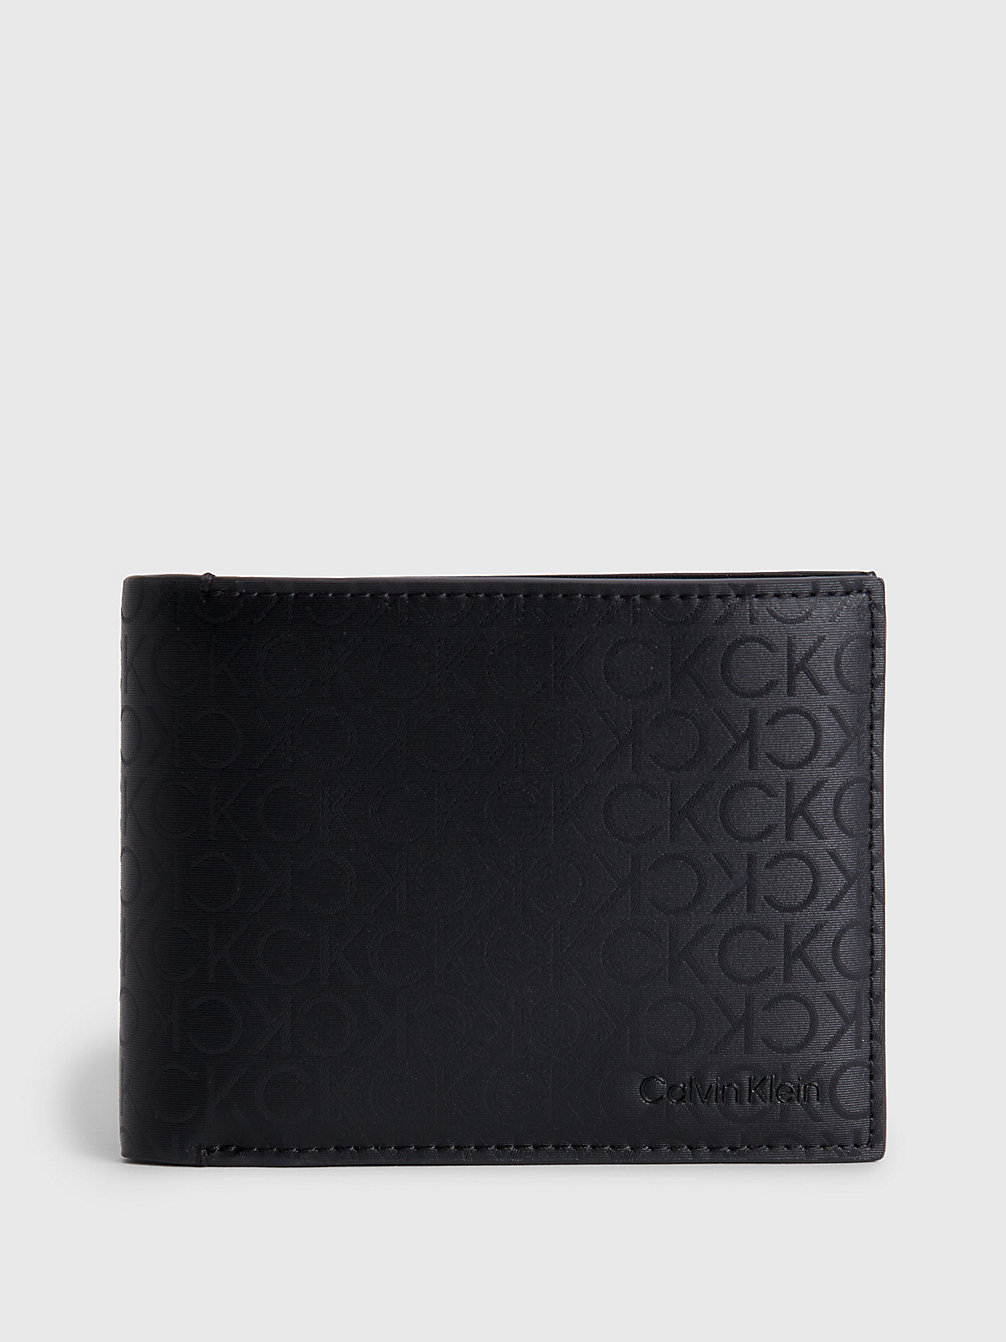 INDUSTRIAL MONO BLACK Dreifach Faltbares Rfid-Portemonnaie Aus Recycling-Material undefined Herren Calvin Klein